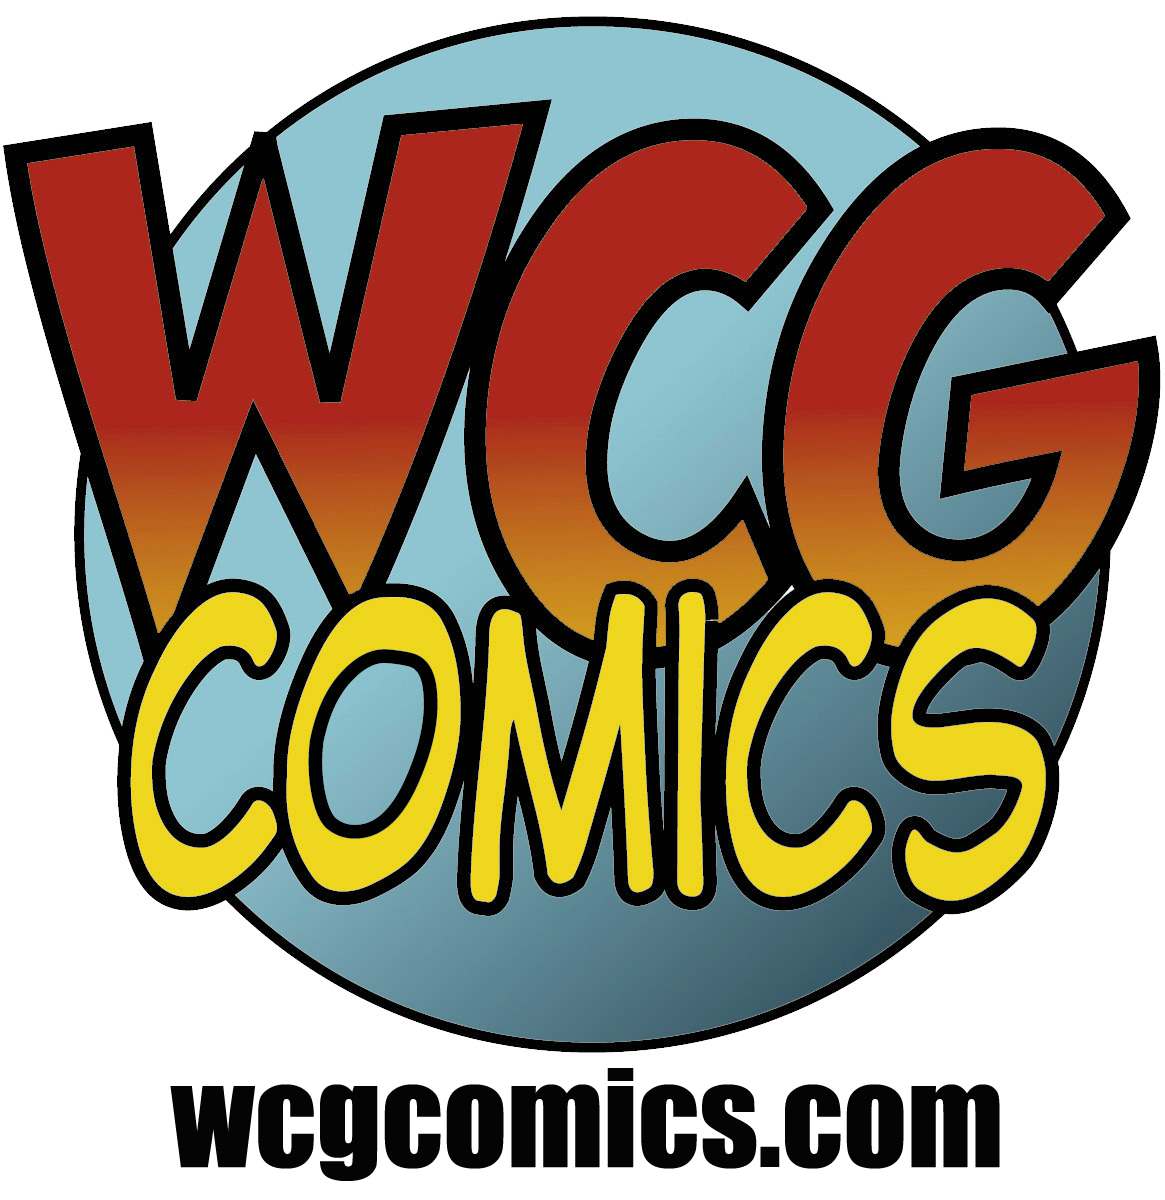 WCG Comics logo